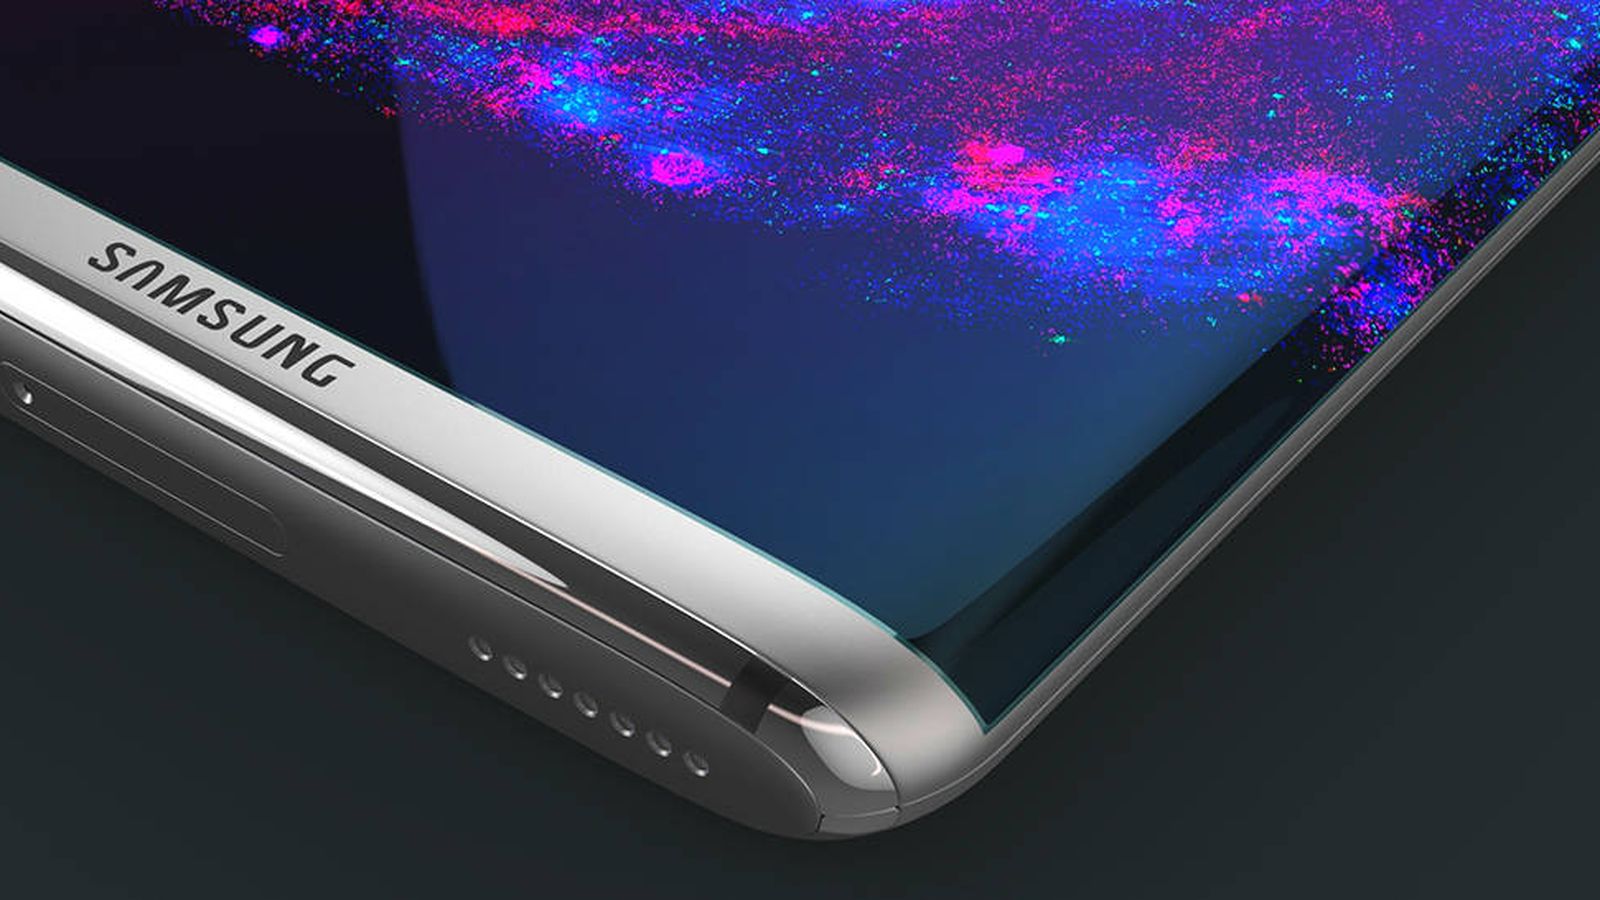 Foto: Render de cómo sería el Galaxy S8, en base a la información filtrada. (Imagen: Phone Arena)